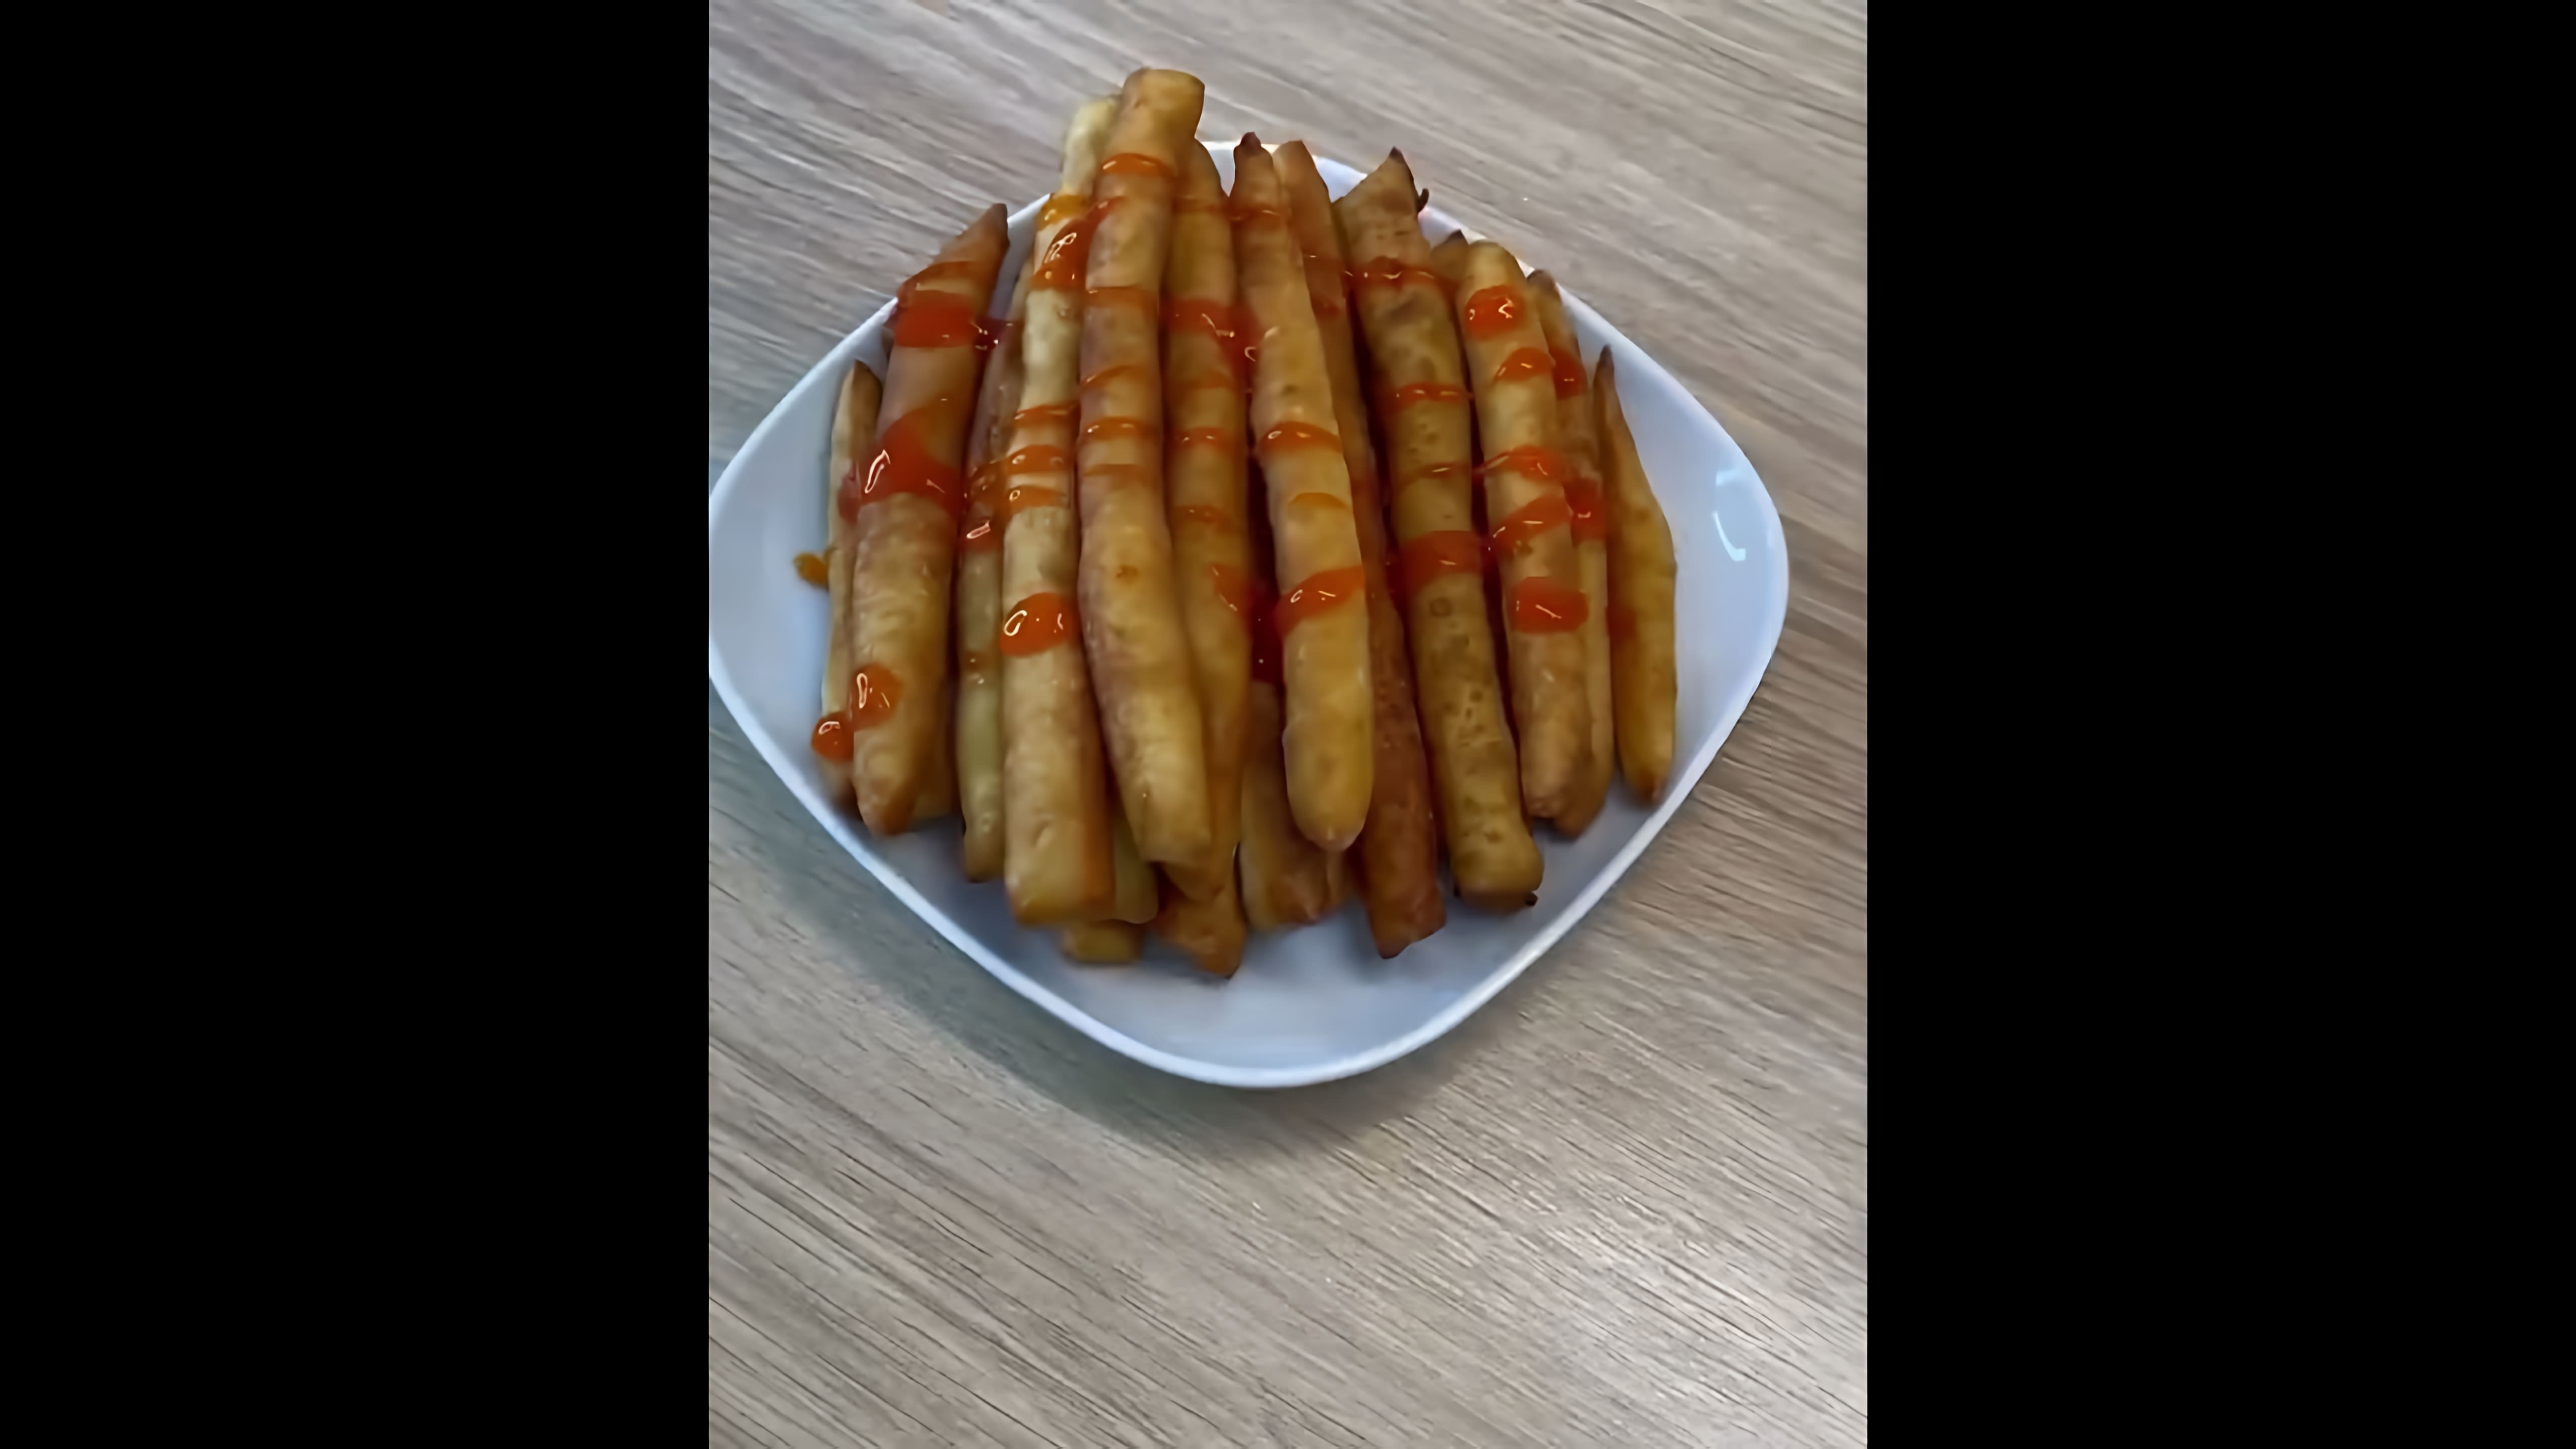 В этом видео демонстрируется рецепт приготовления картофельных палочек, которые получаются вкуснее, чем картофель фри